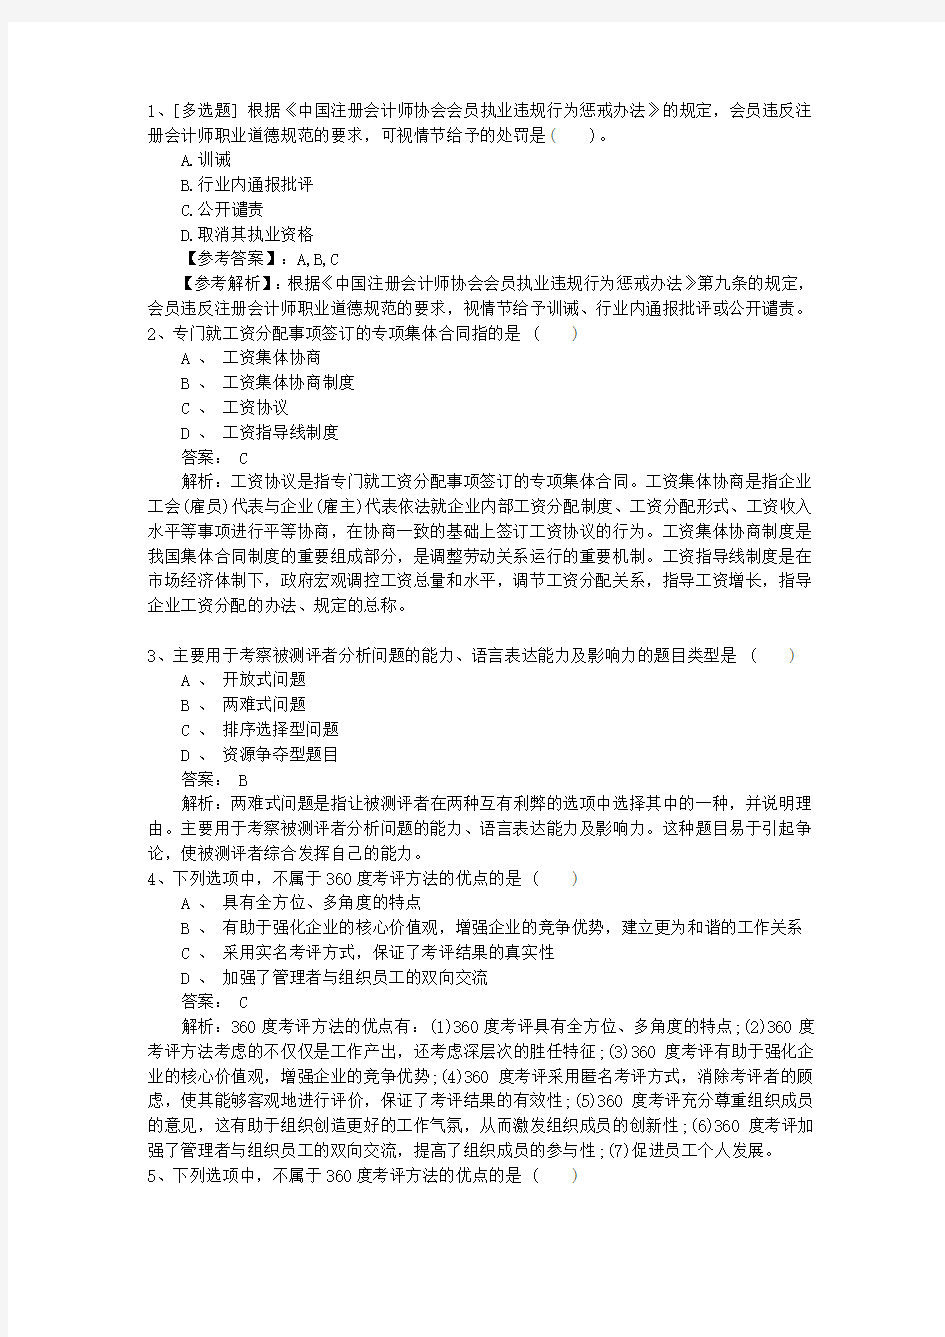 2015年江苏省人力资源考试模拟试题最新考试题库(完整版)